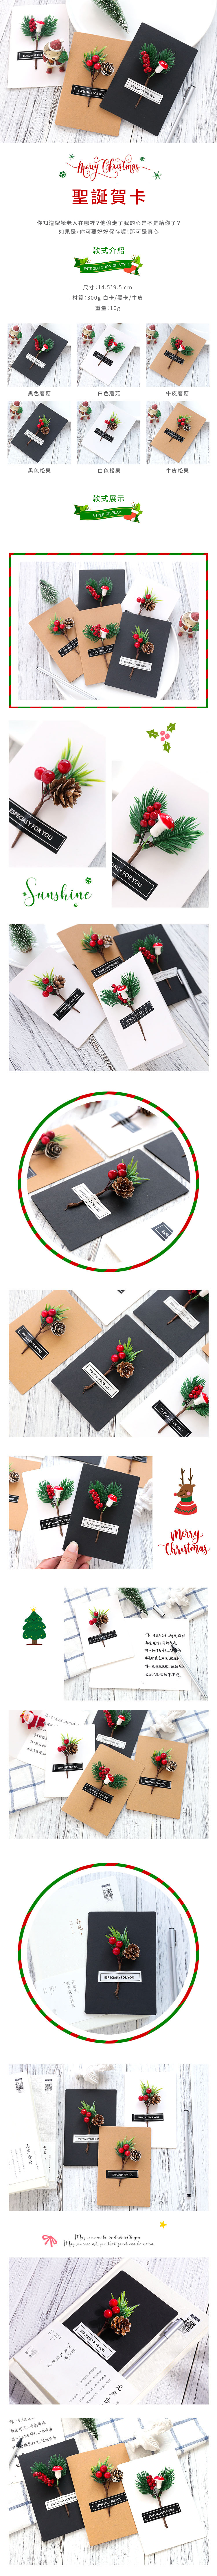 卡片提袋包材館 [自寫卡片/卡片外套] 聖誕裝飾賀卡 黑色蘑菇